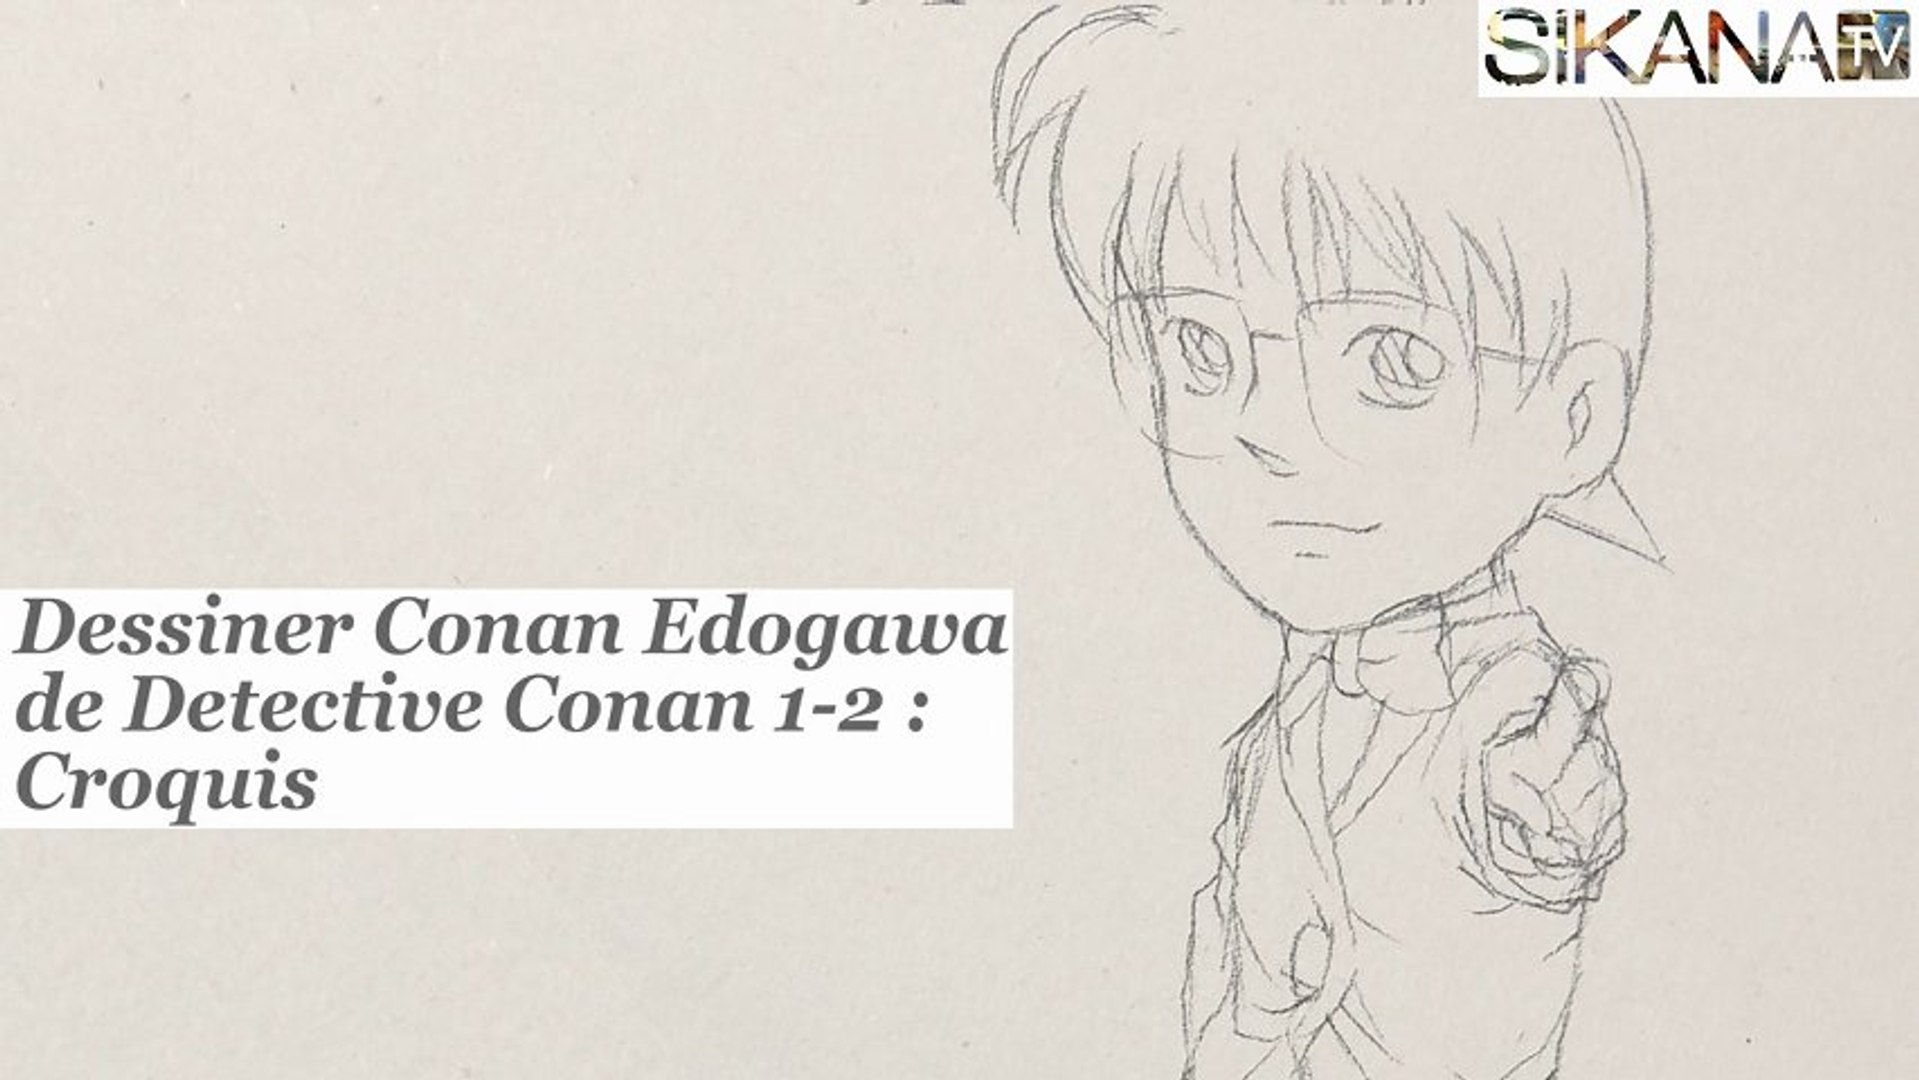 Manga Dessiner Conan Edogawa 1 2 Le Dessin Hd